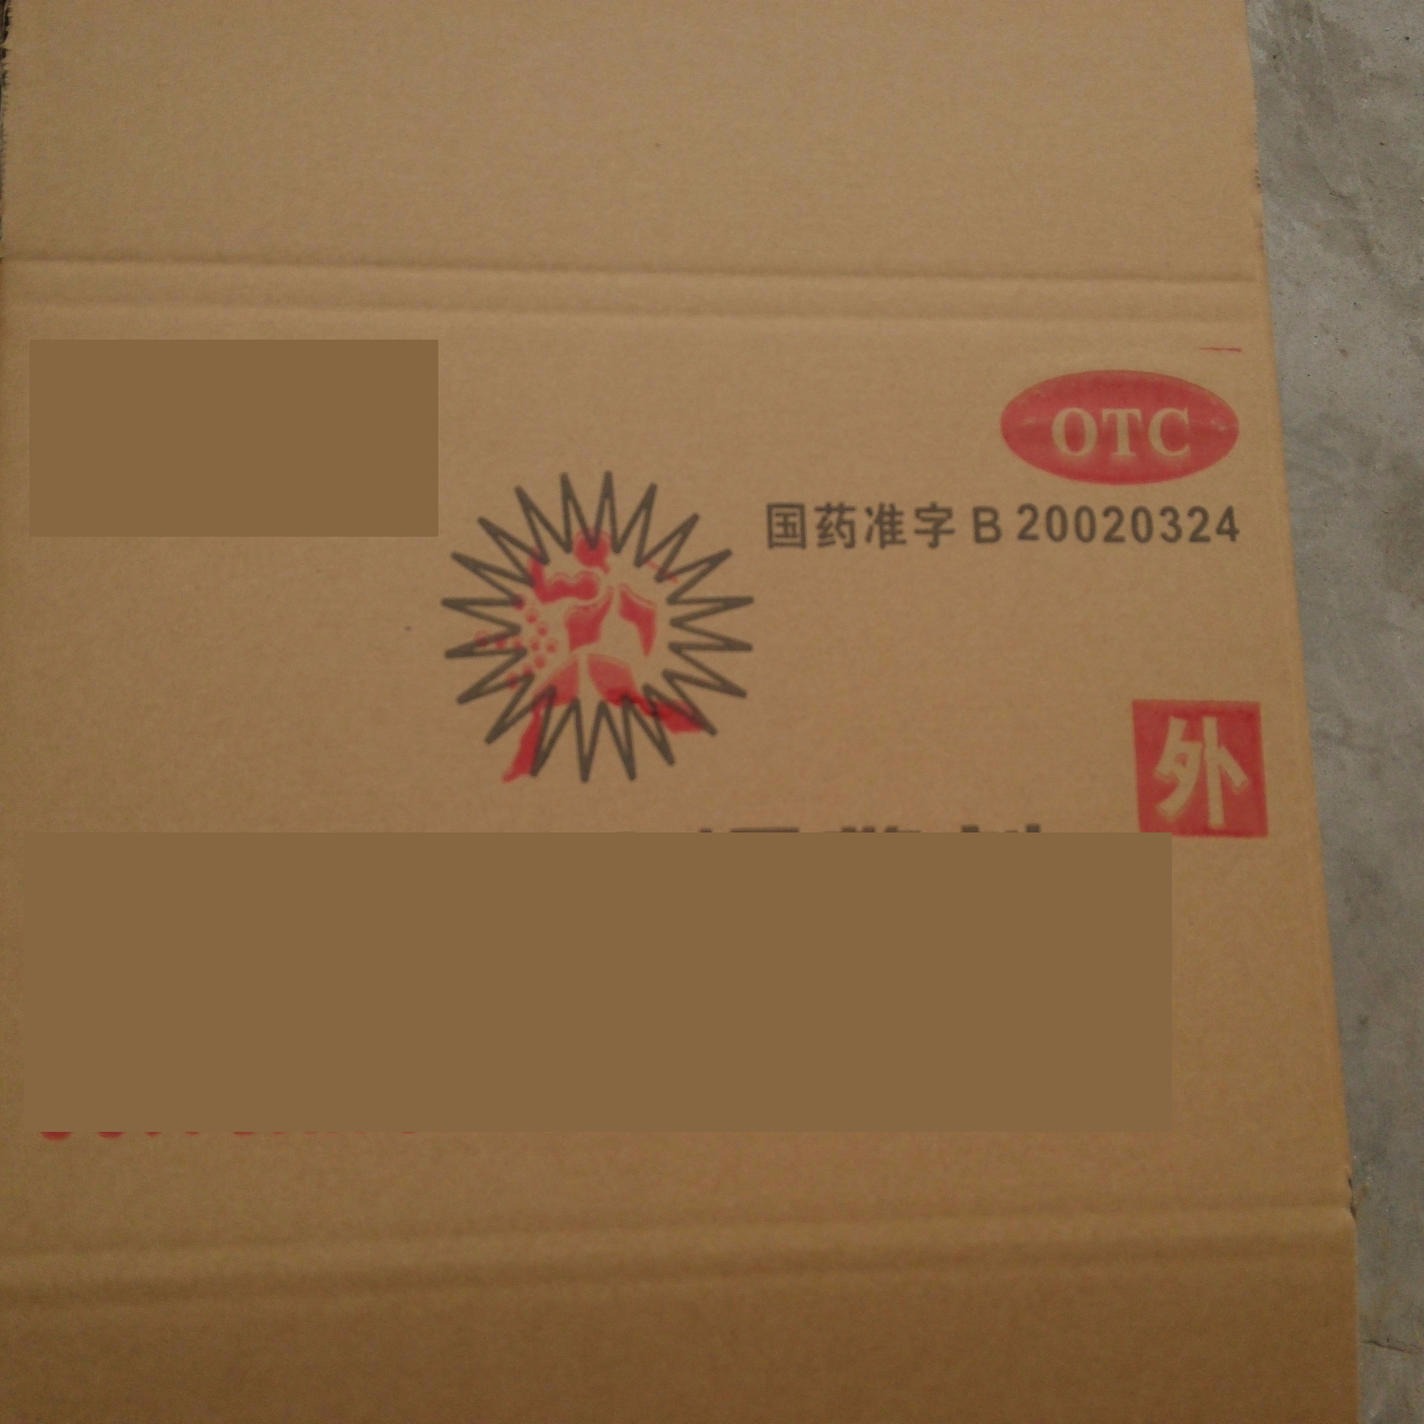 代替纸盒打包的包装_冰箱纸盒箱子包装设计素材_纸盒包装技术